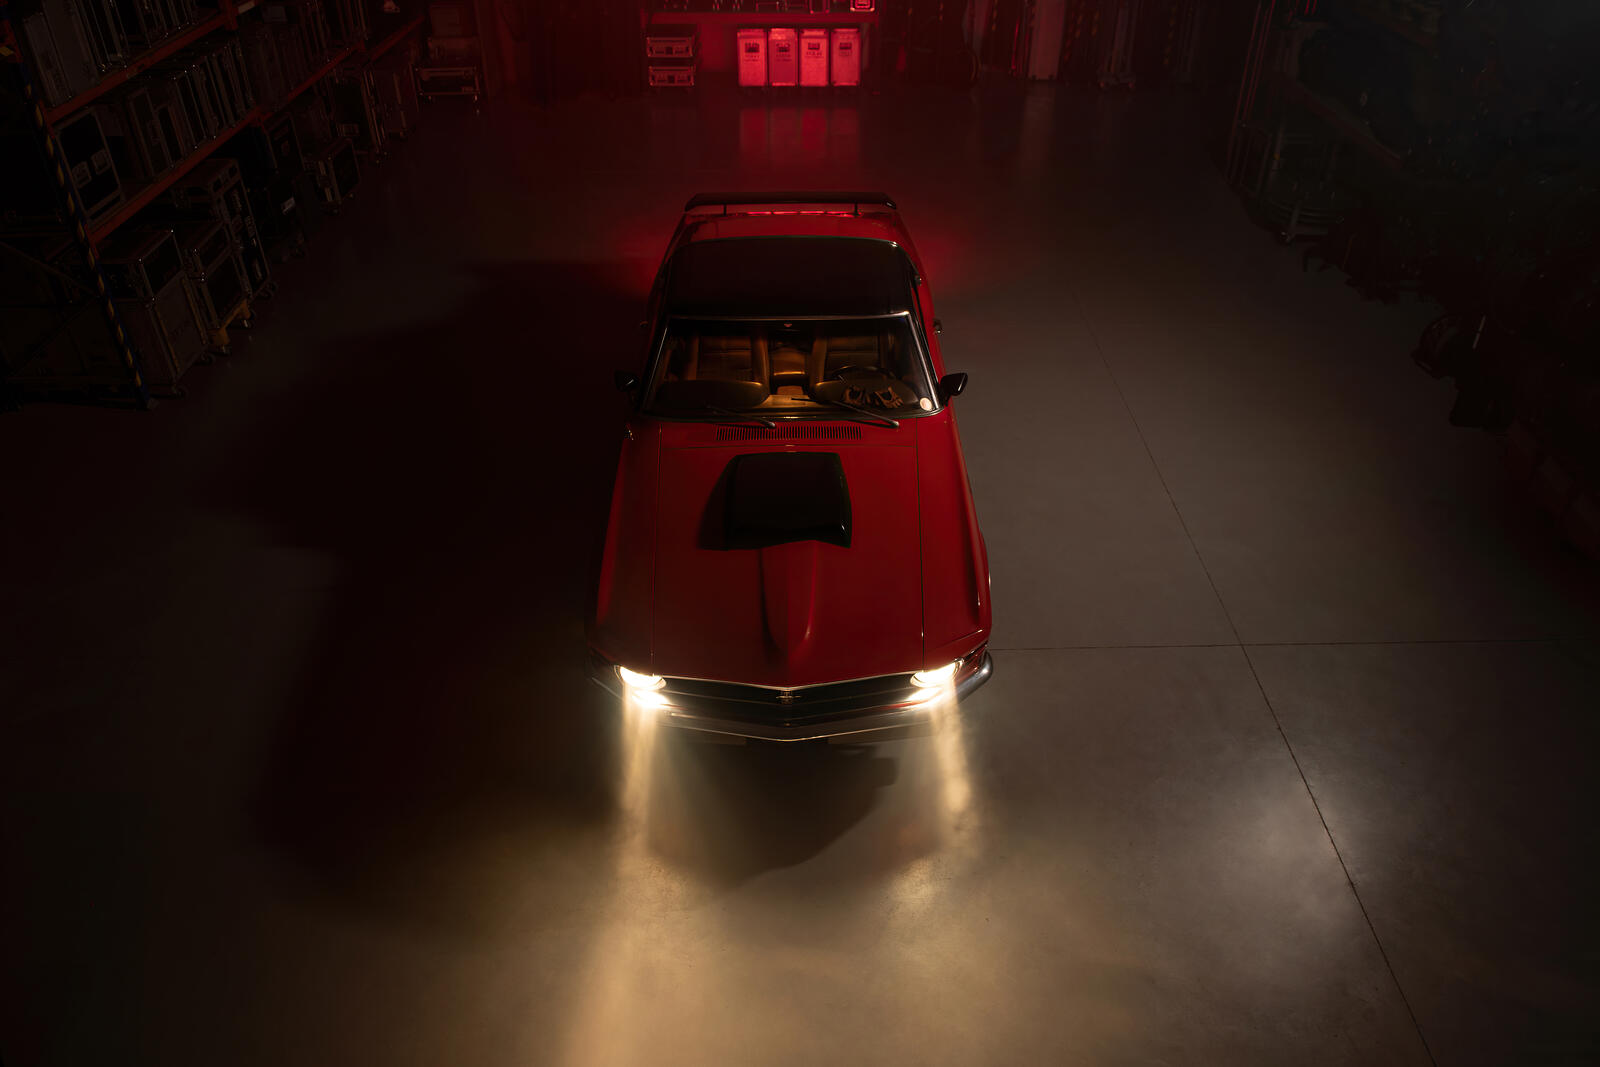 Бесплатное фото Ford Mustang красного цвета в пыльном помещении